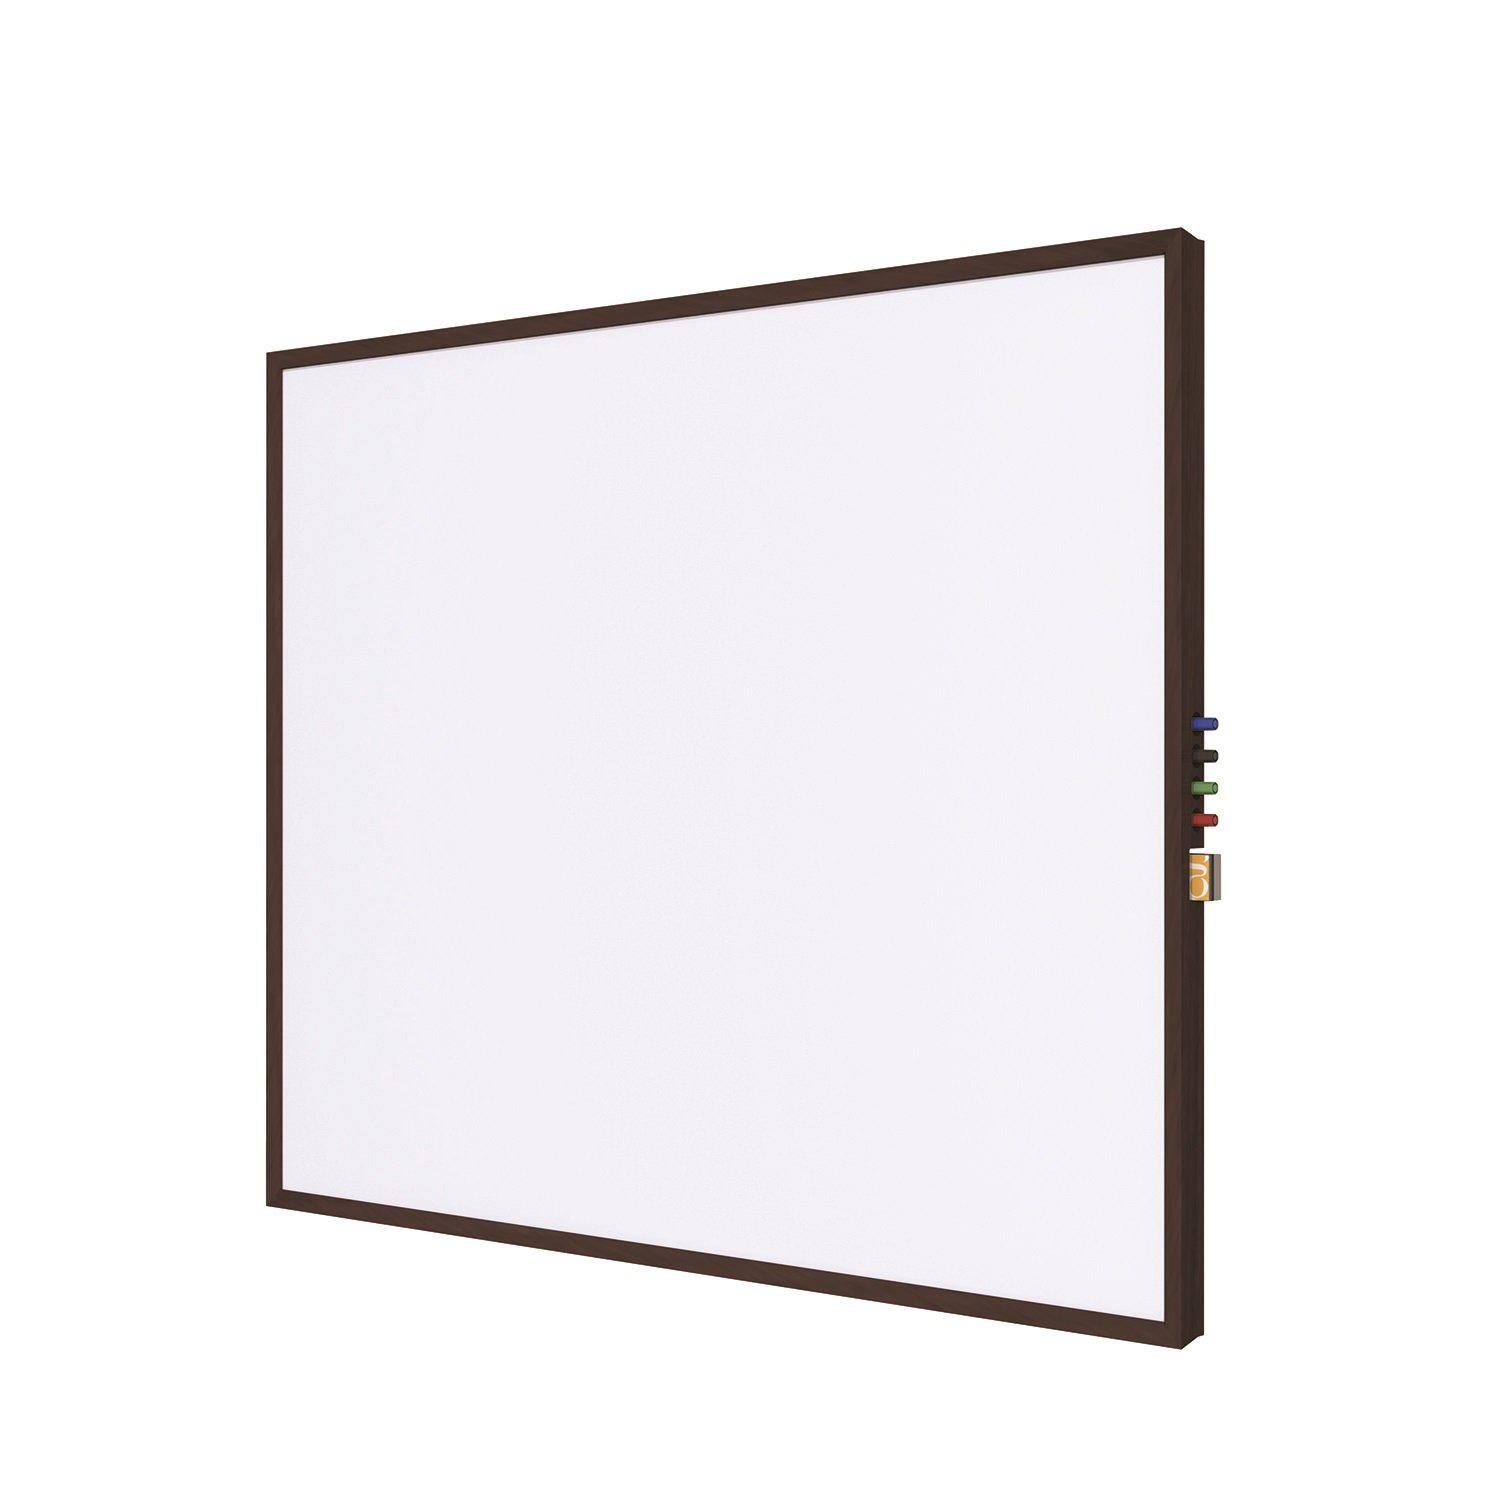 Impression Wood Framed Magnetic Porcelain Whiteboard, 4' H x 5' W